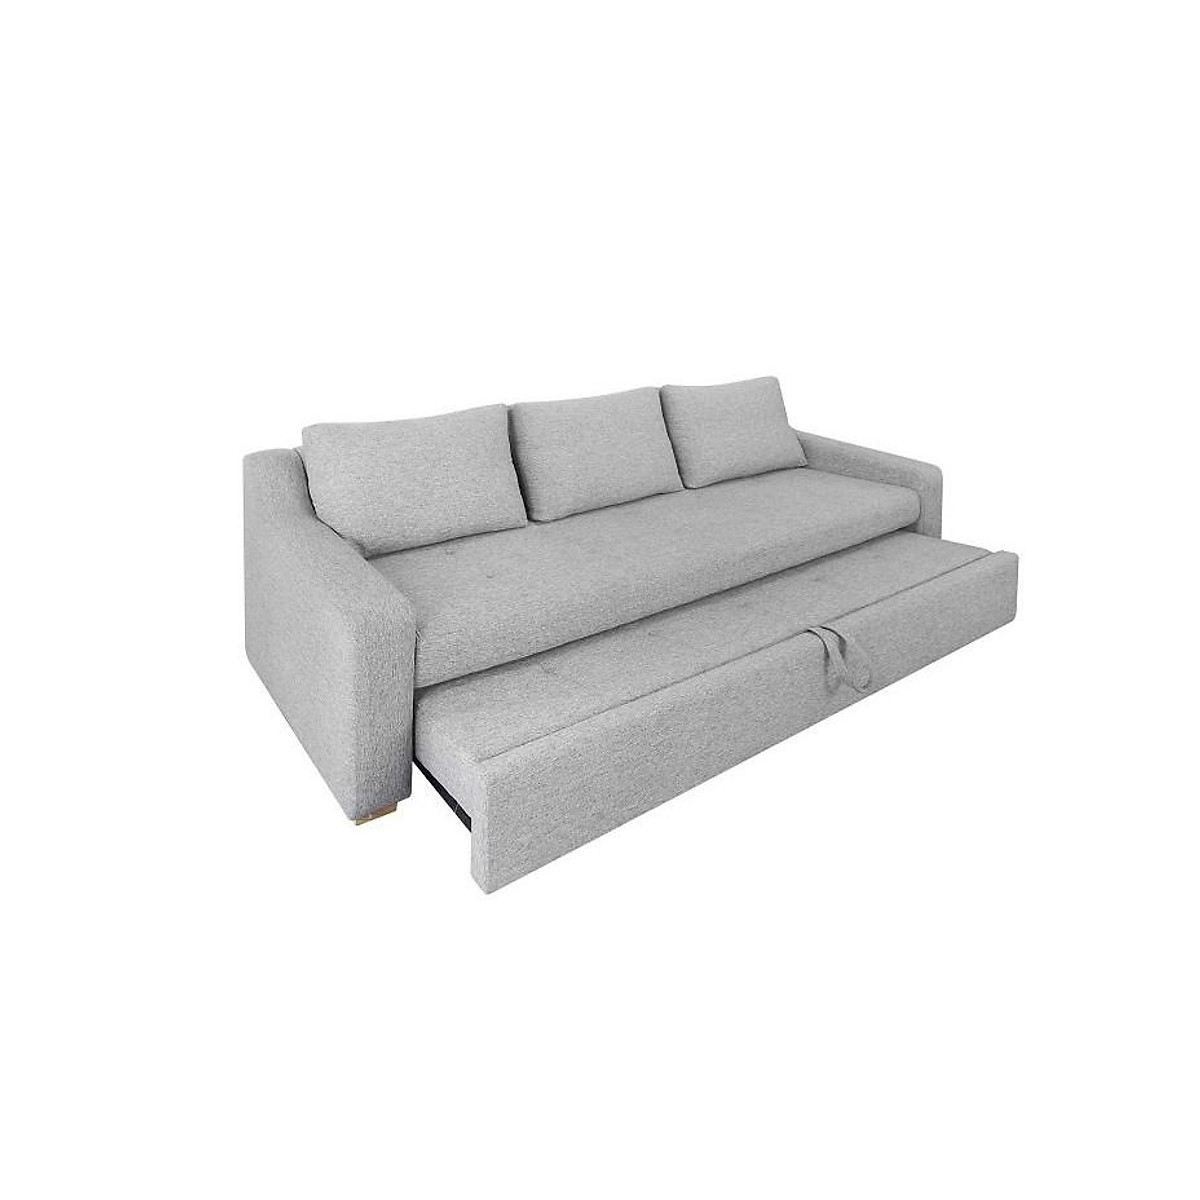 Sofa giường kéo Tundo màu xám